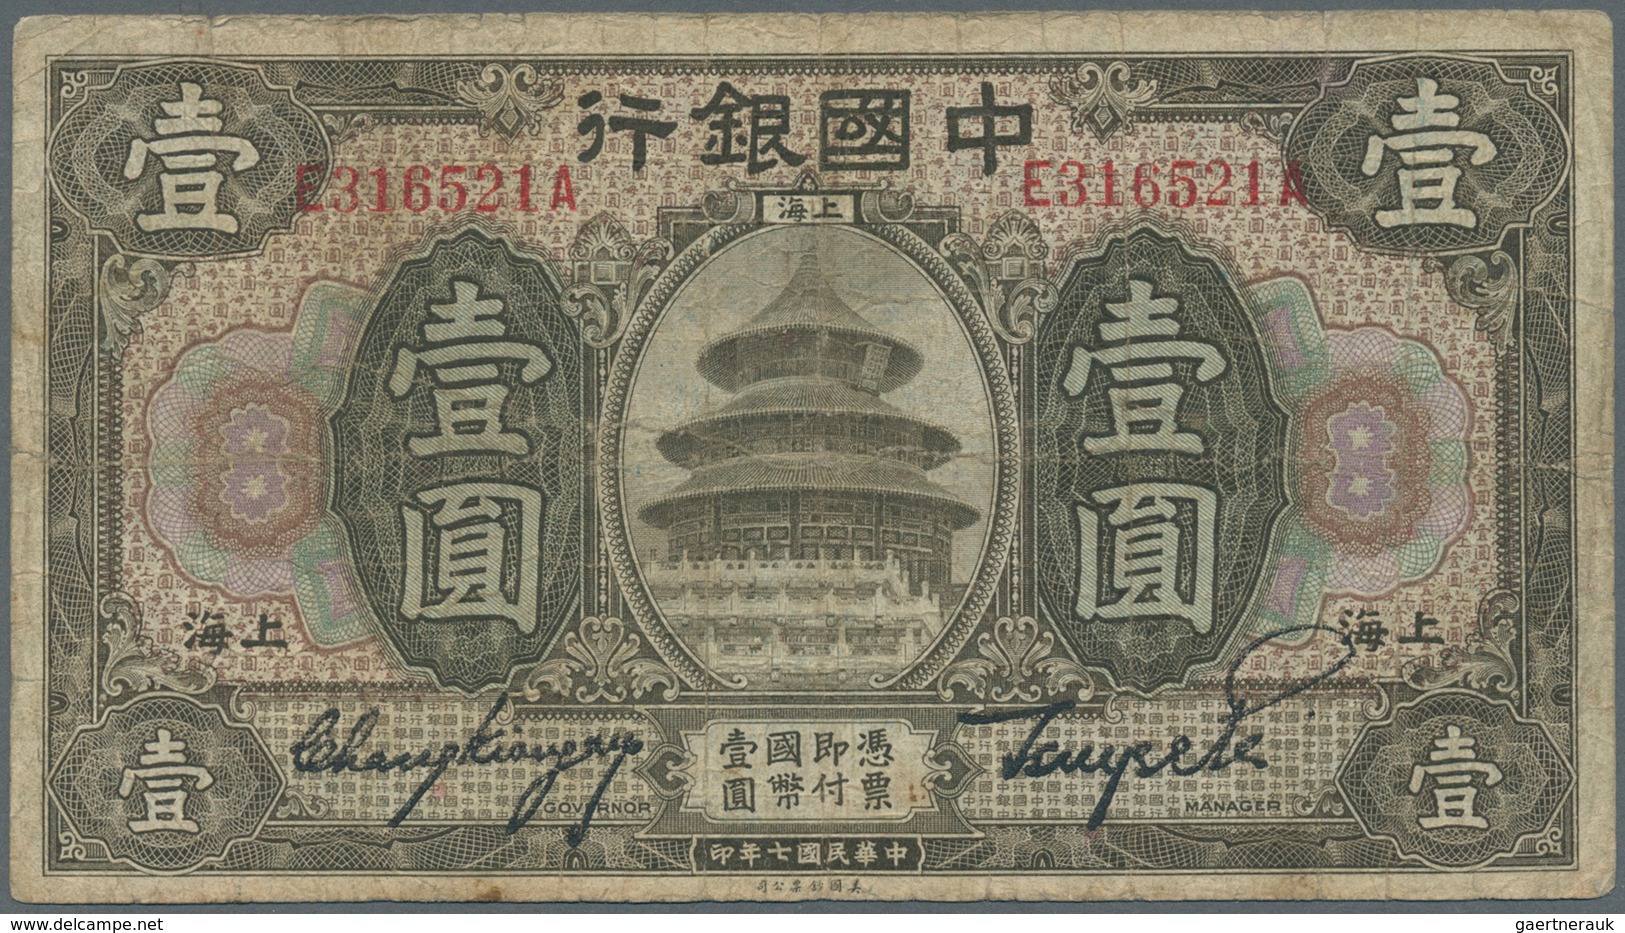 01286 China: set of 9 banknotes containing 2x 1 Juan Shanghai 1918 Pick 51m (F- and F), 1 Yuan Tientsin 19